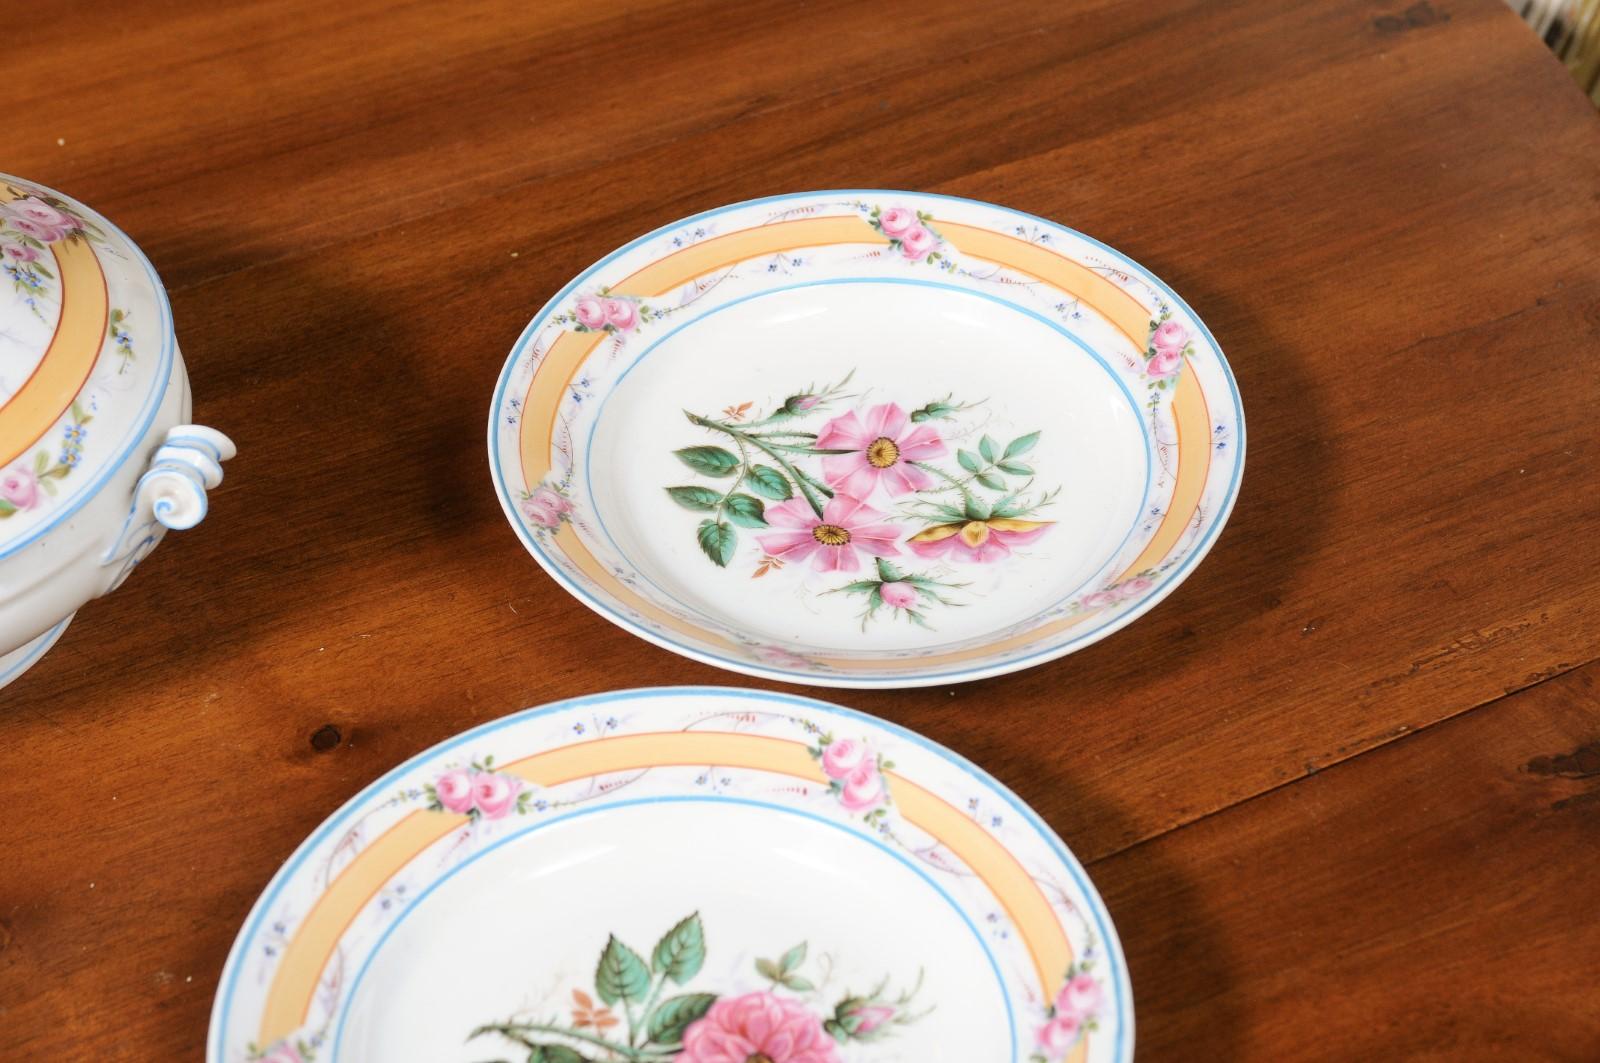 Porcelaine de Paris 19th Century Floral Dish Set with Casserole and Plates 7